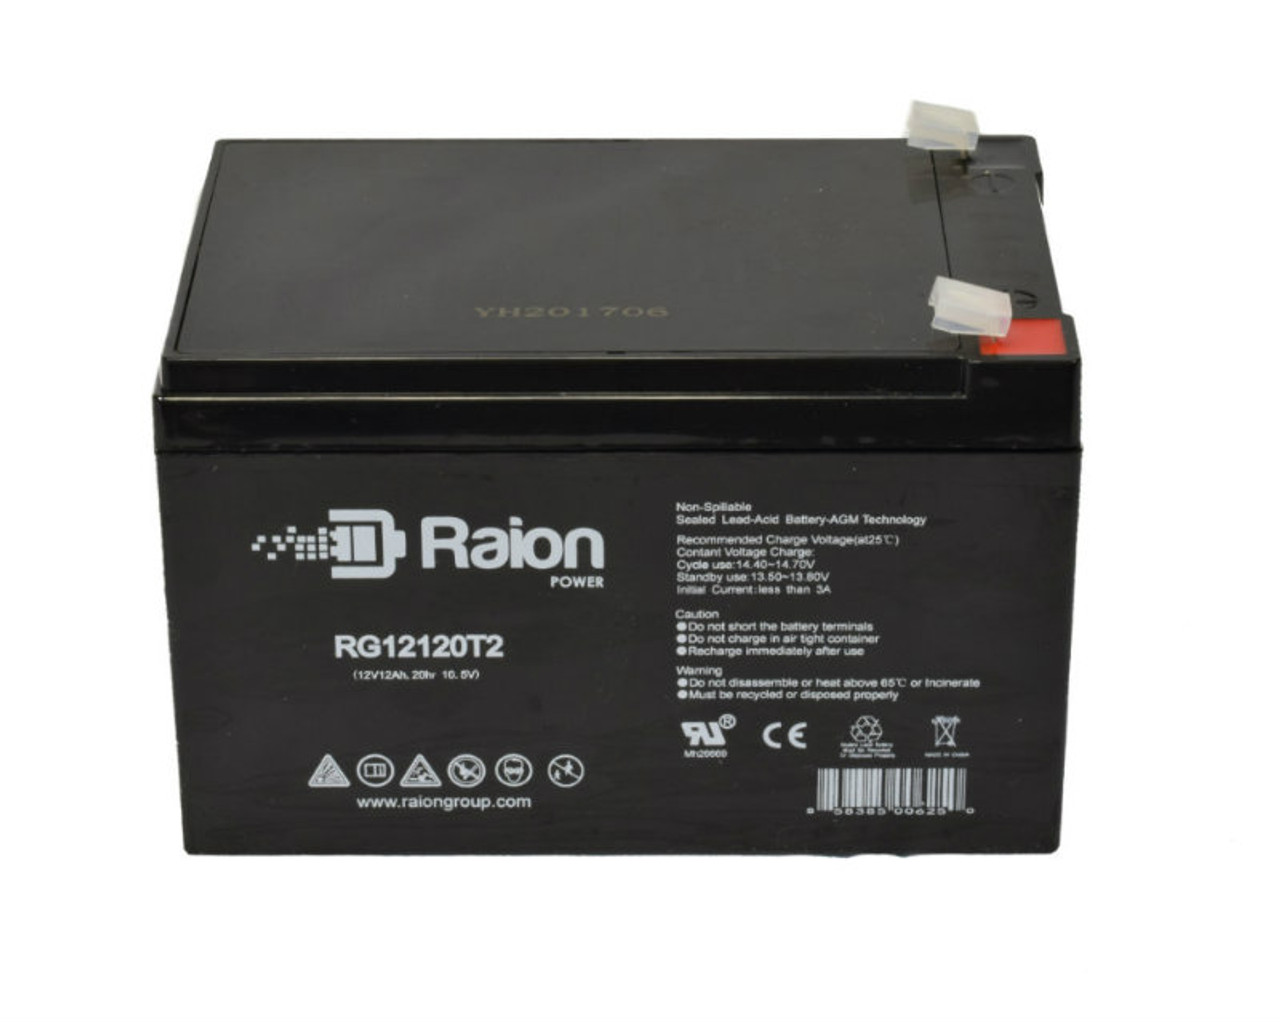 Raion Power RG12120T2 SLA Battery for Kaiying KS12-12